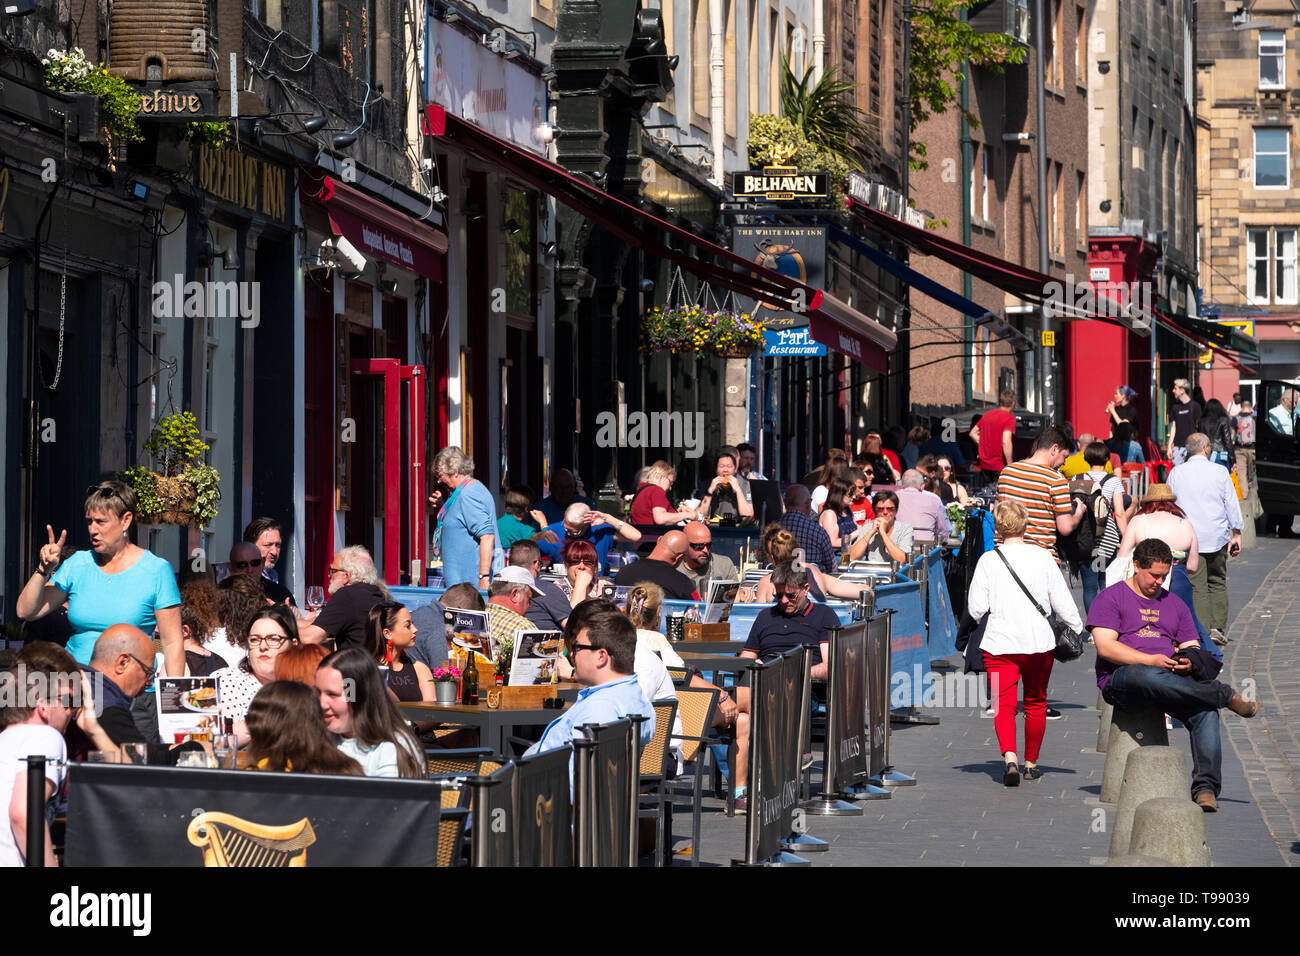 Beaucoup de gens boire ou manger à l'extérieur dans le soleil chaud dans les bars et cafés sur Grassmarket dans la vieille ville d'Édimbourg, Écosse, Royaume-Uni Banque D'Images